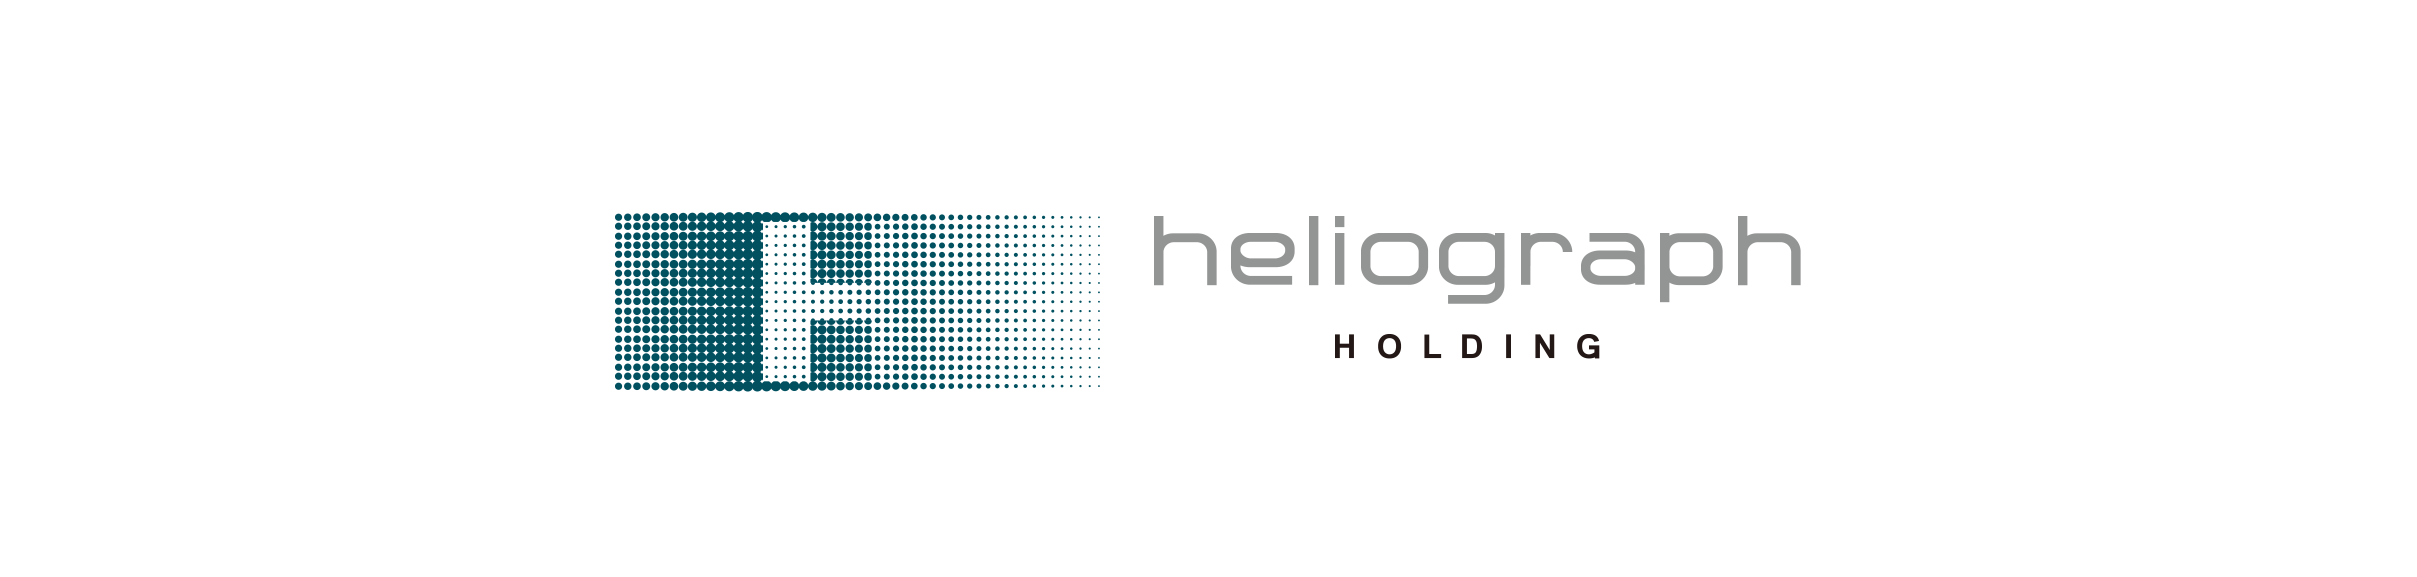 บริษัท ดิจิเฟล็คซ์ จำกัด ตัวแทนจำหน่ายสินค้าทั้งหมดจาก Heliograph Holding แต่เพียงผู้เดียว